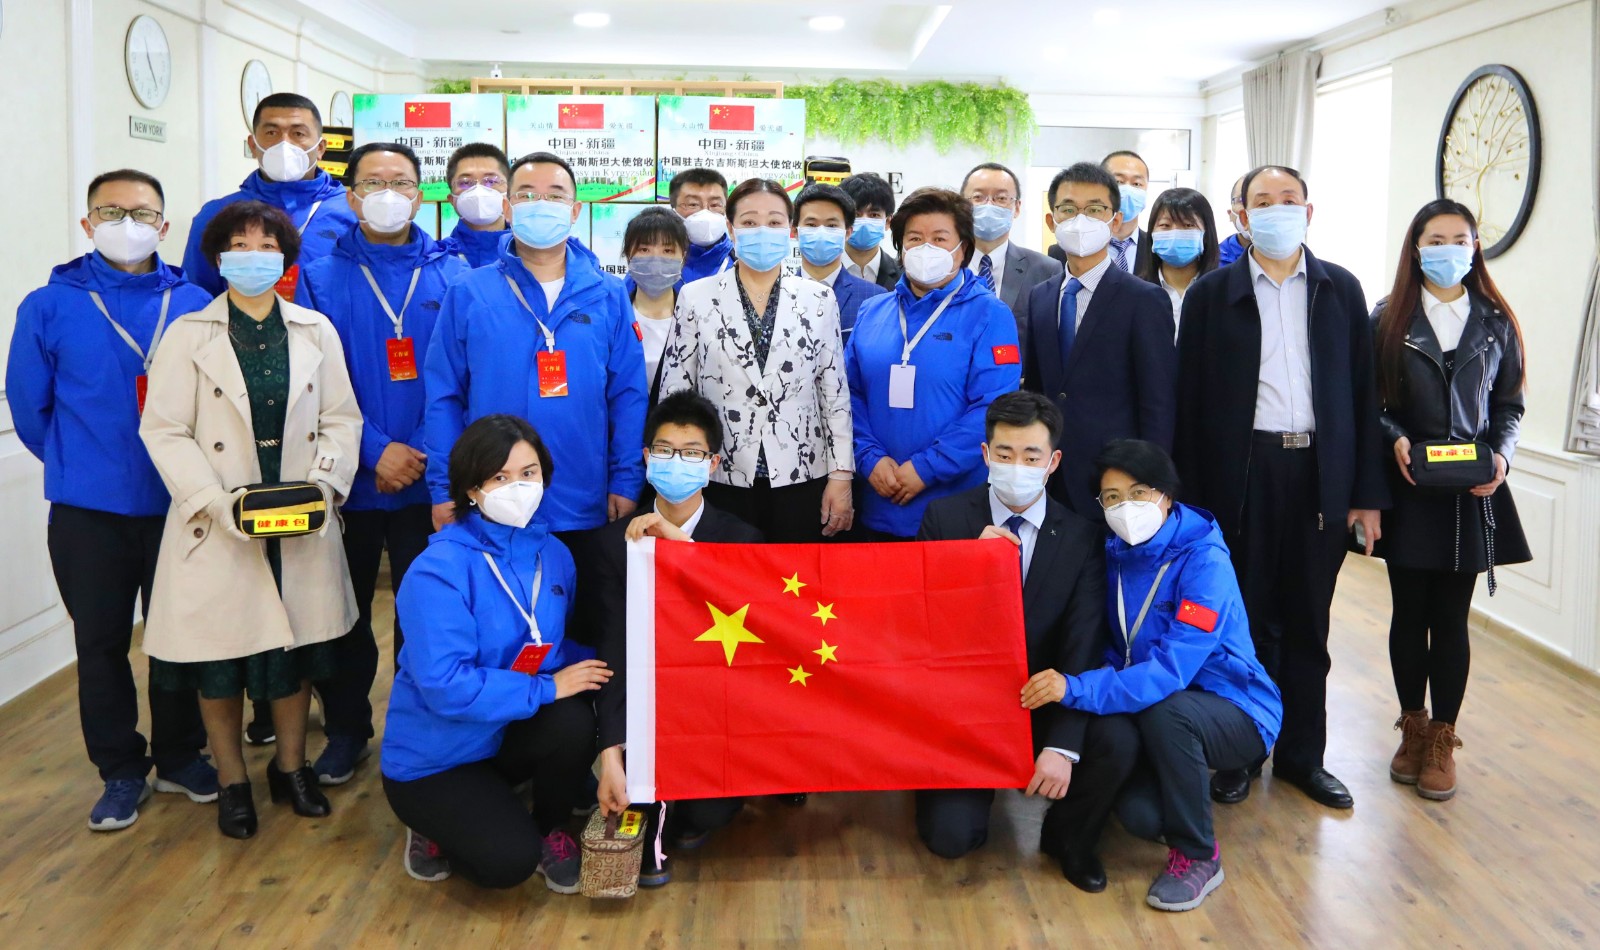 Посольство КНР в КР выдал противоэпидемические средства защиты для китайских студентов и преподавателей в Кыргызстане